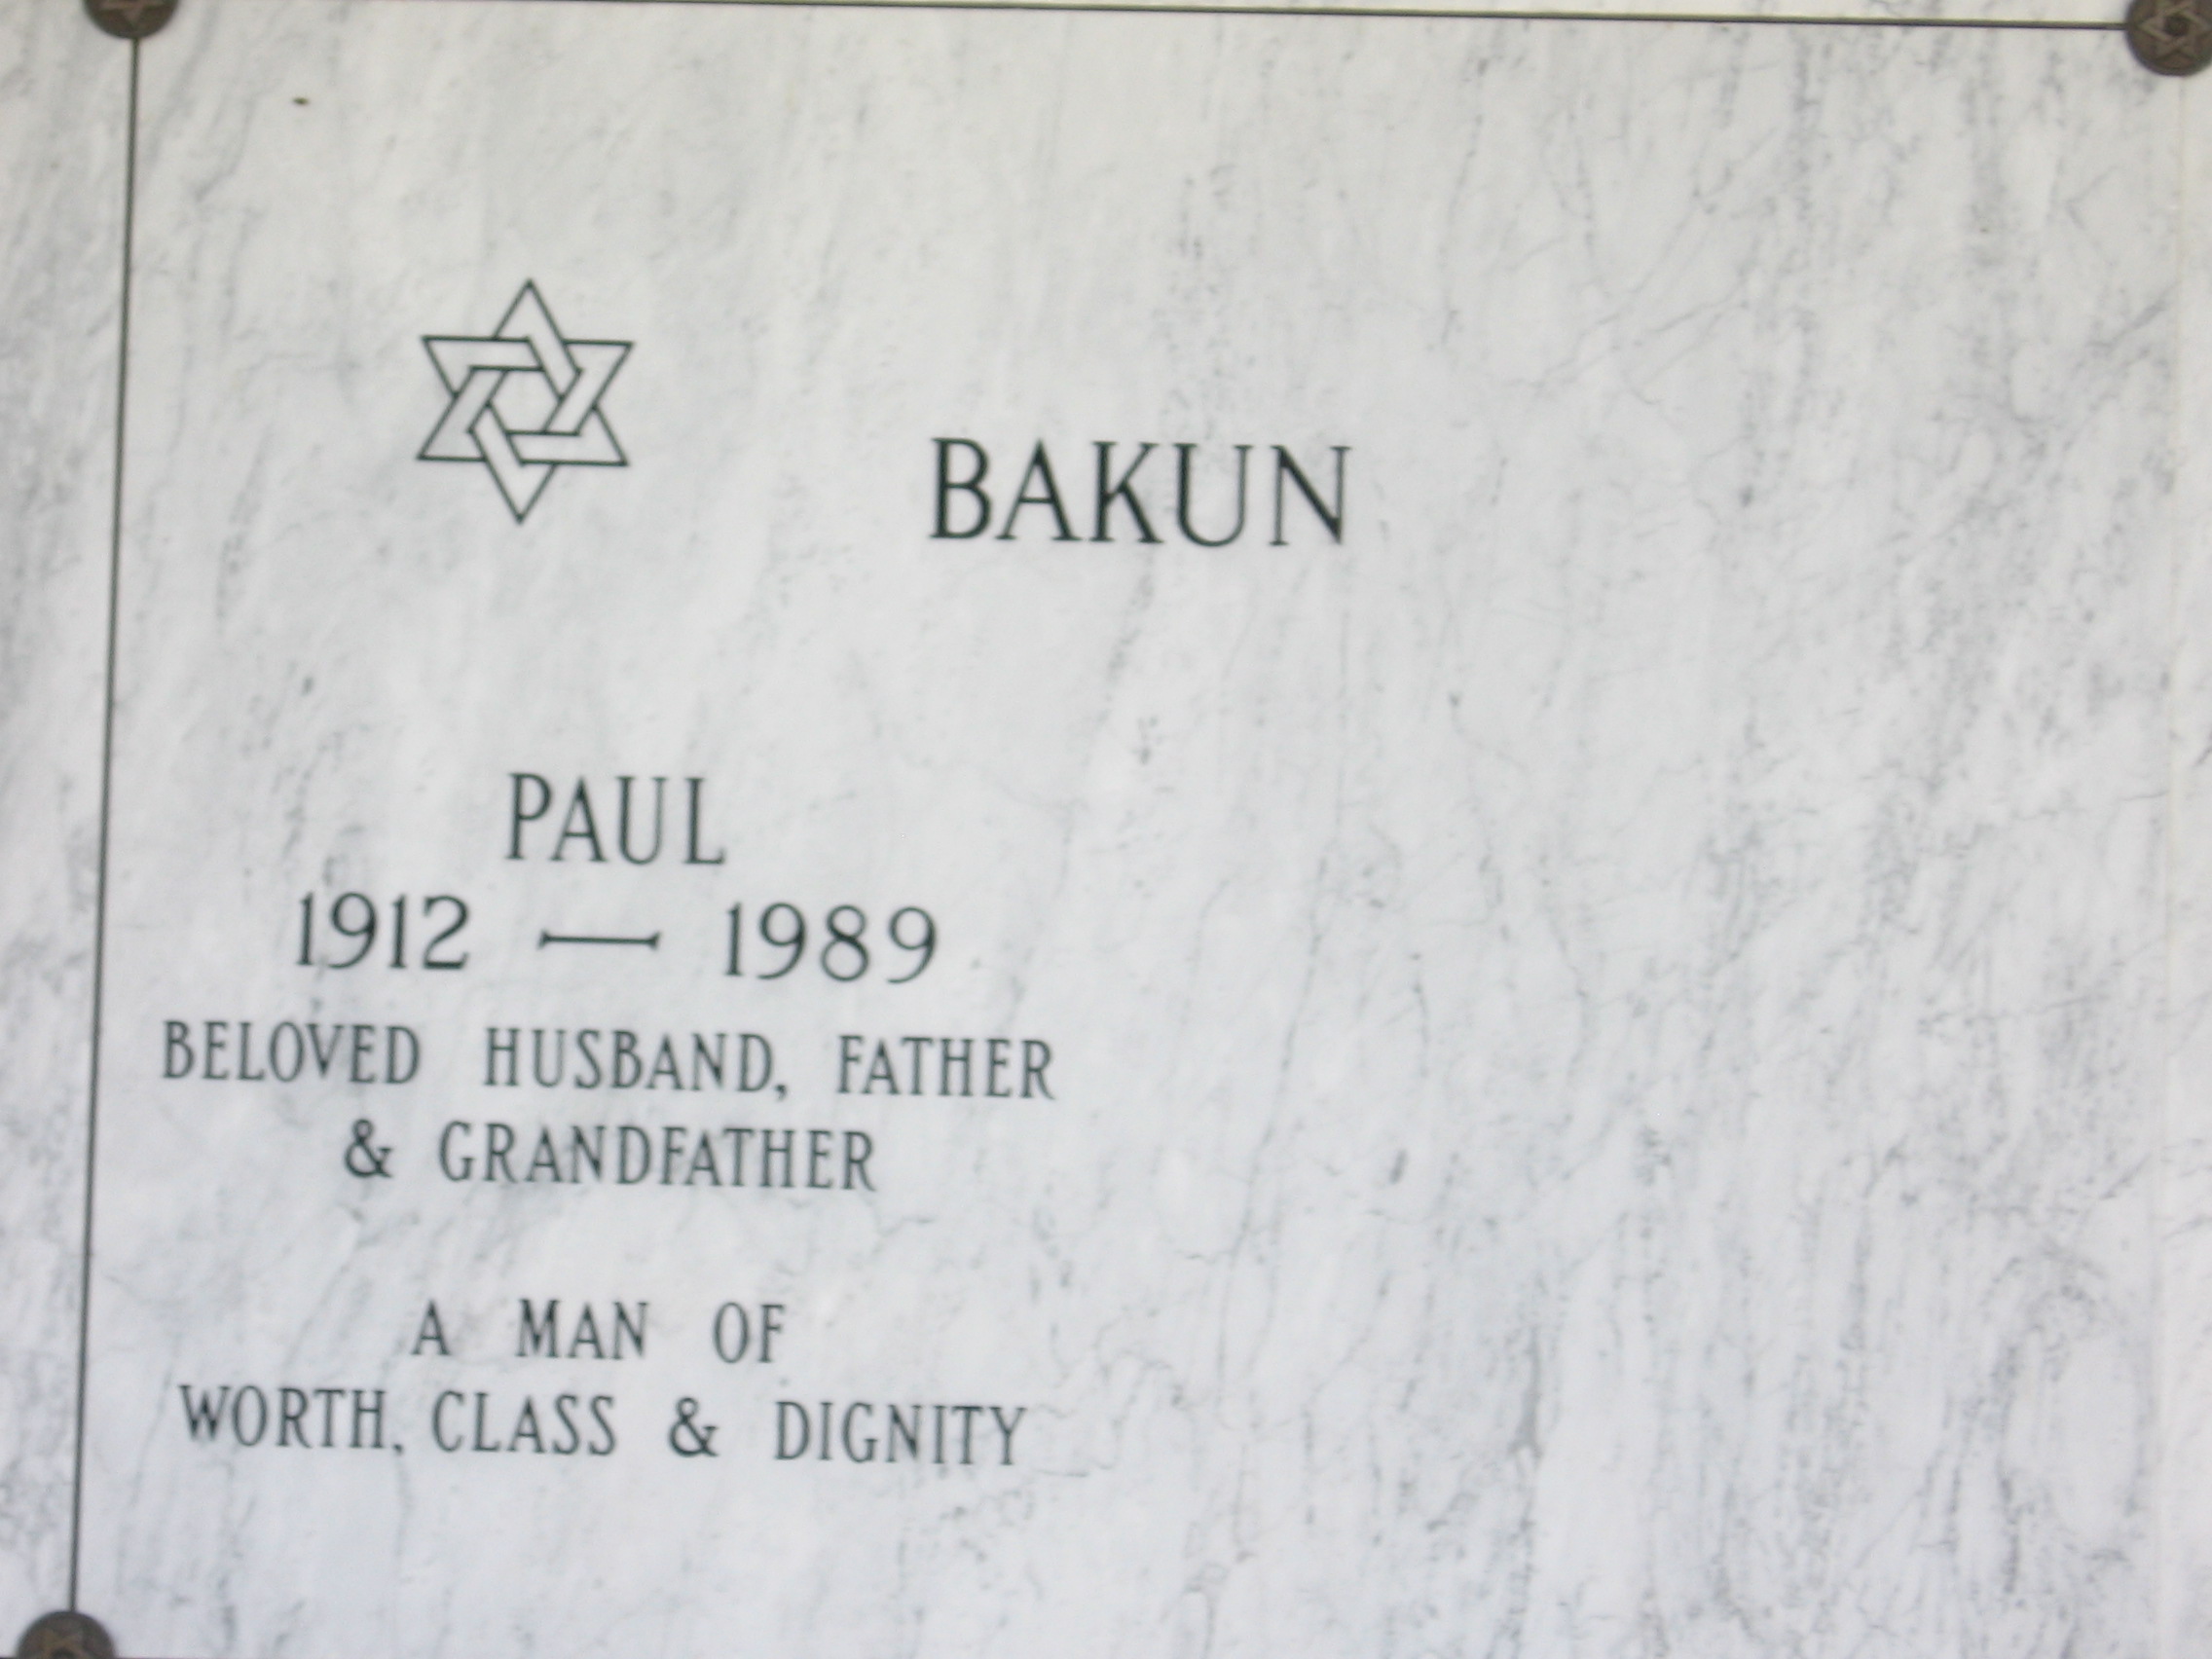 Paul Bakun